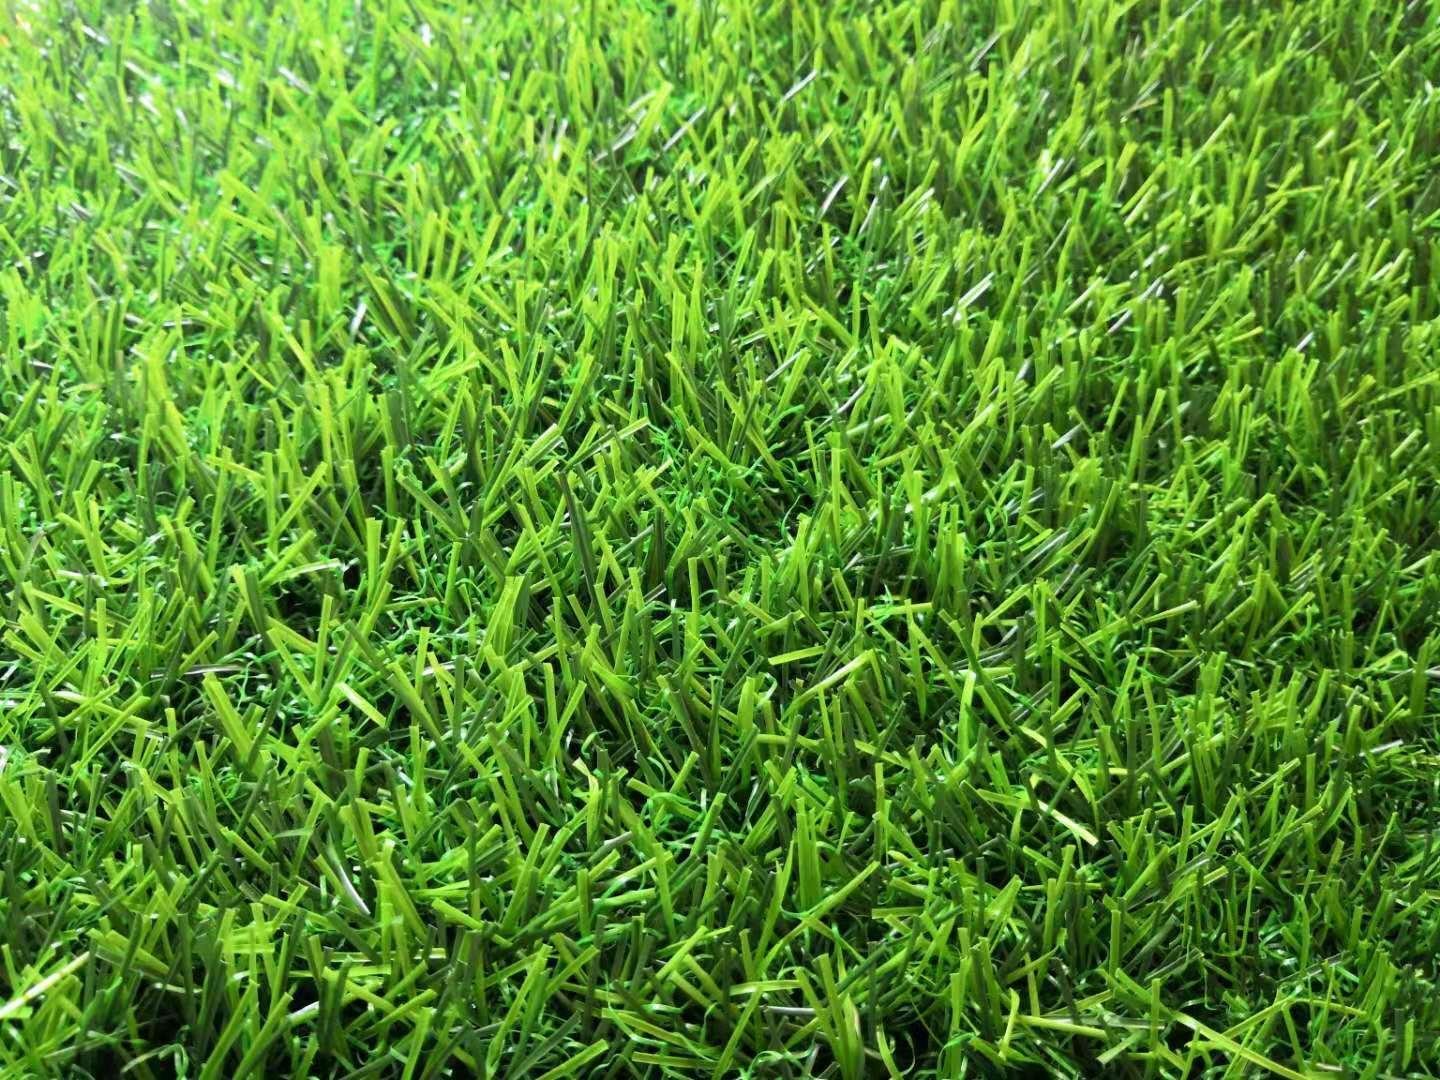 All Green Grass 26mm